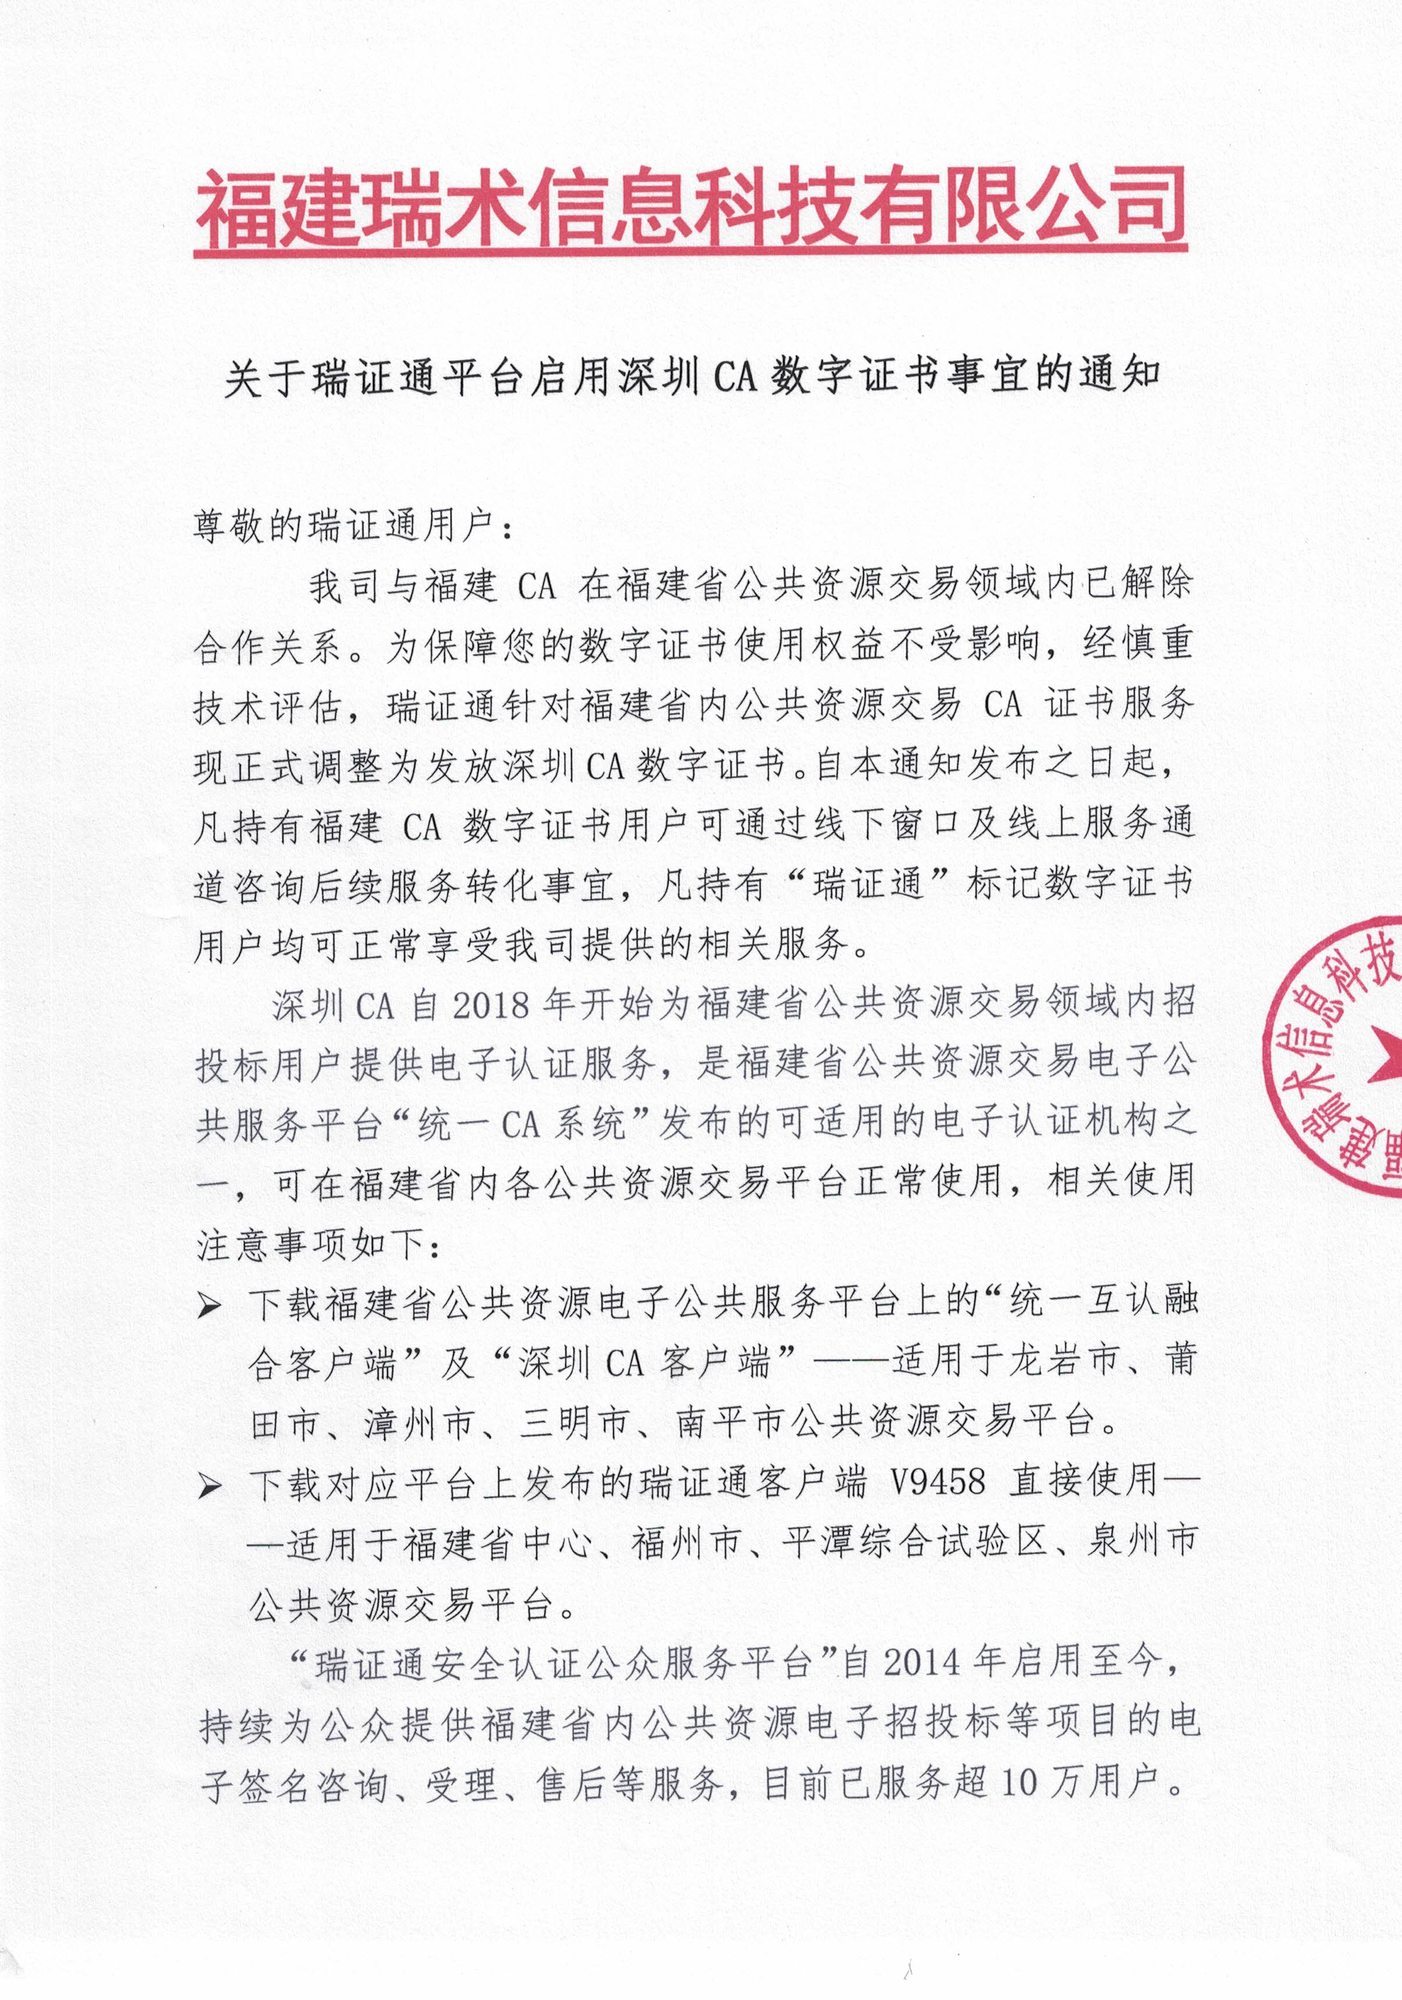 关于瑞证通平台启用深圳CA数字证书事宜的通知20210820_页面_1.jpg